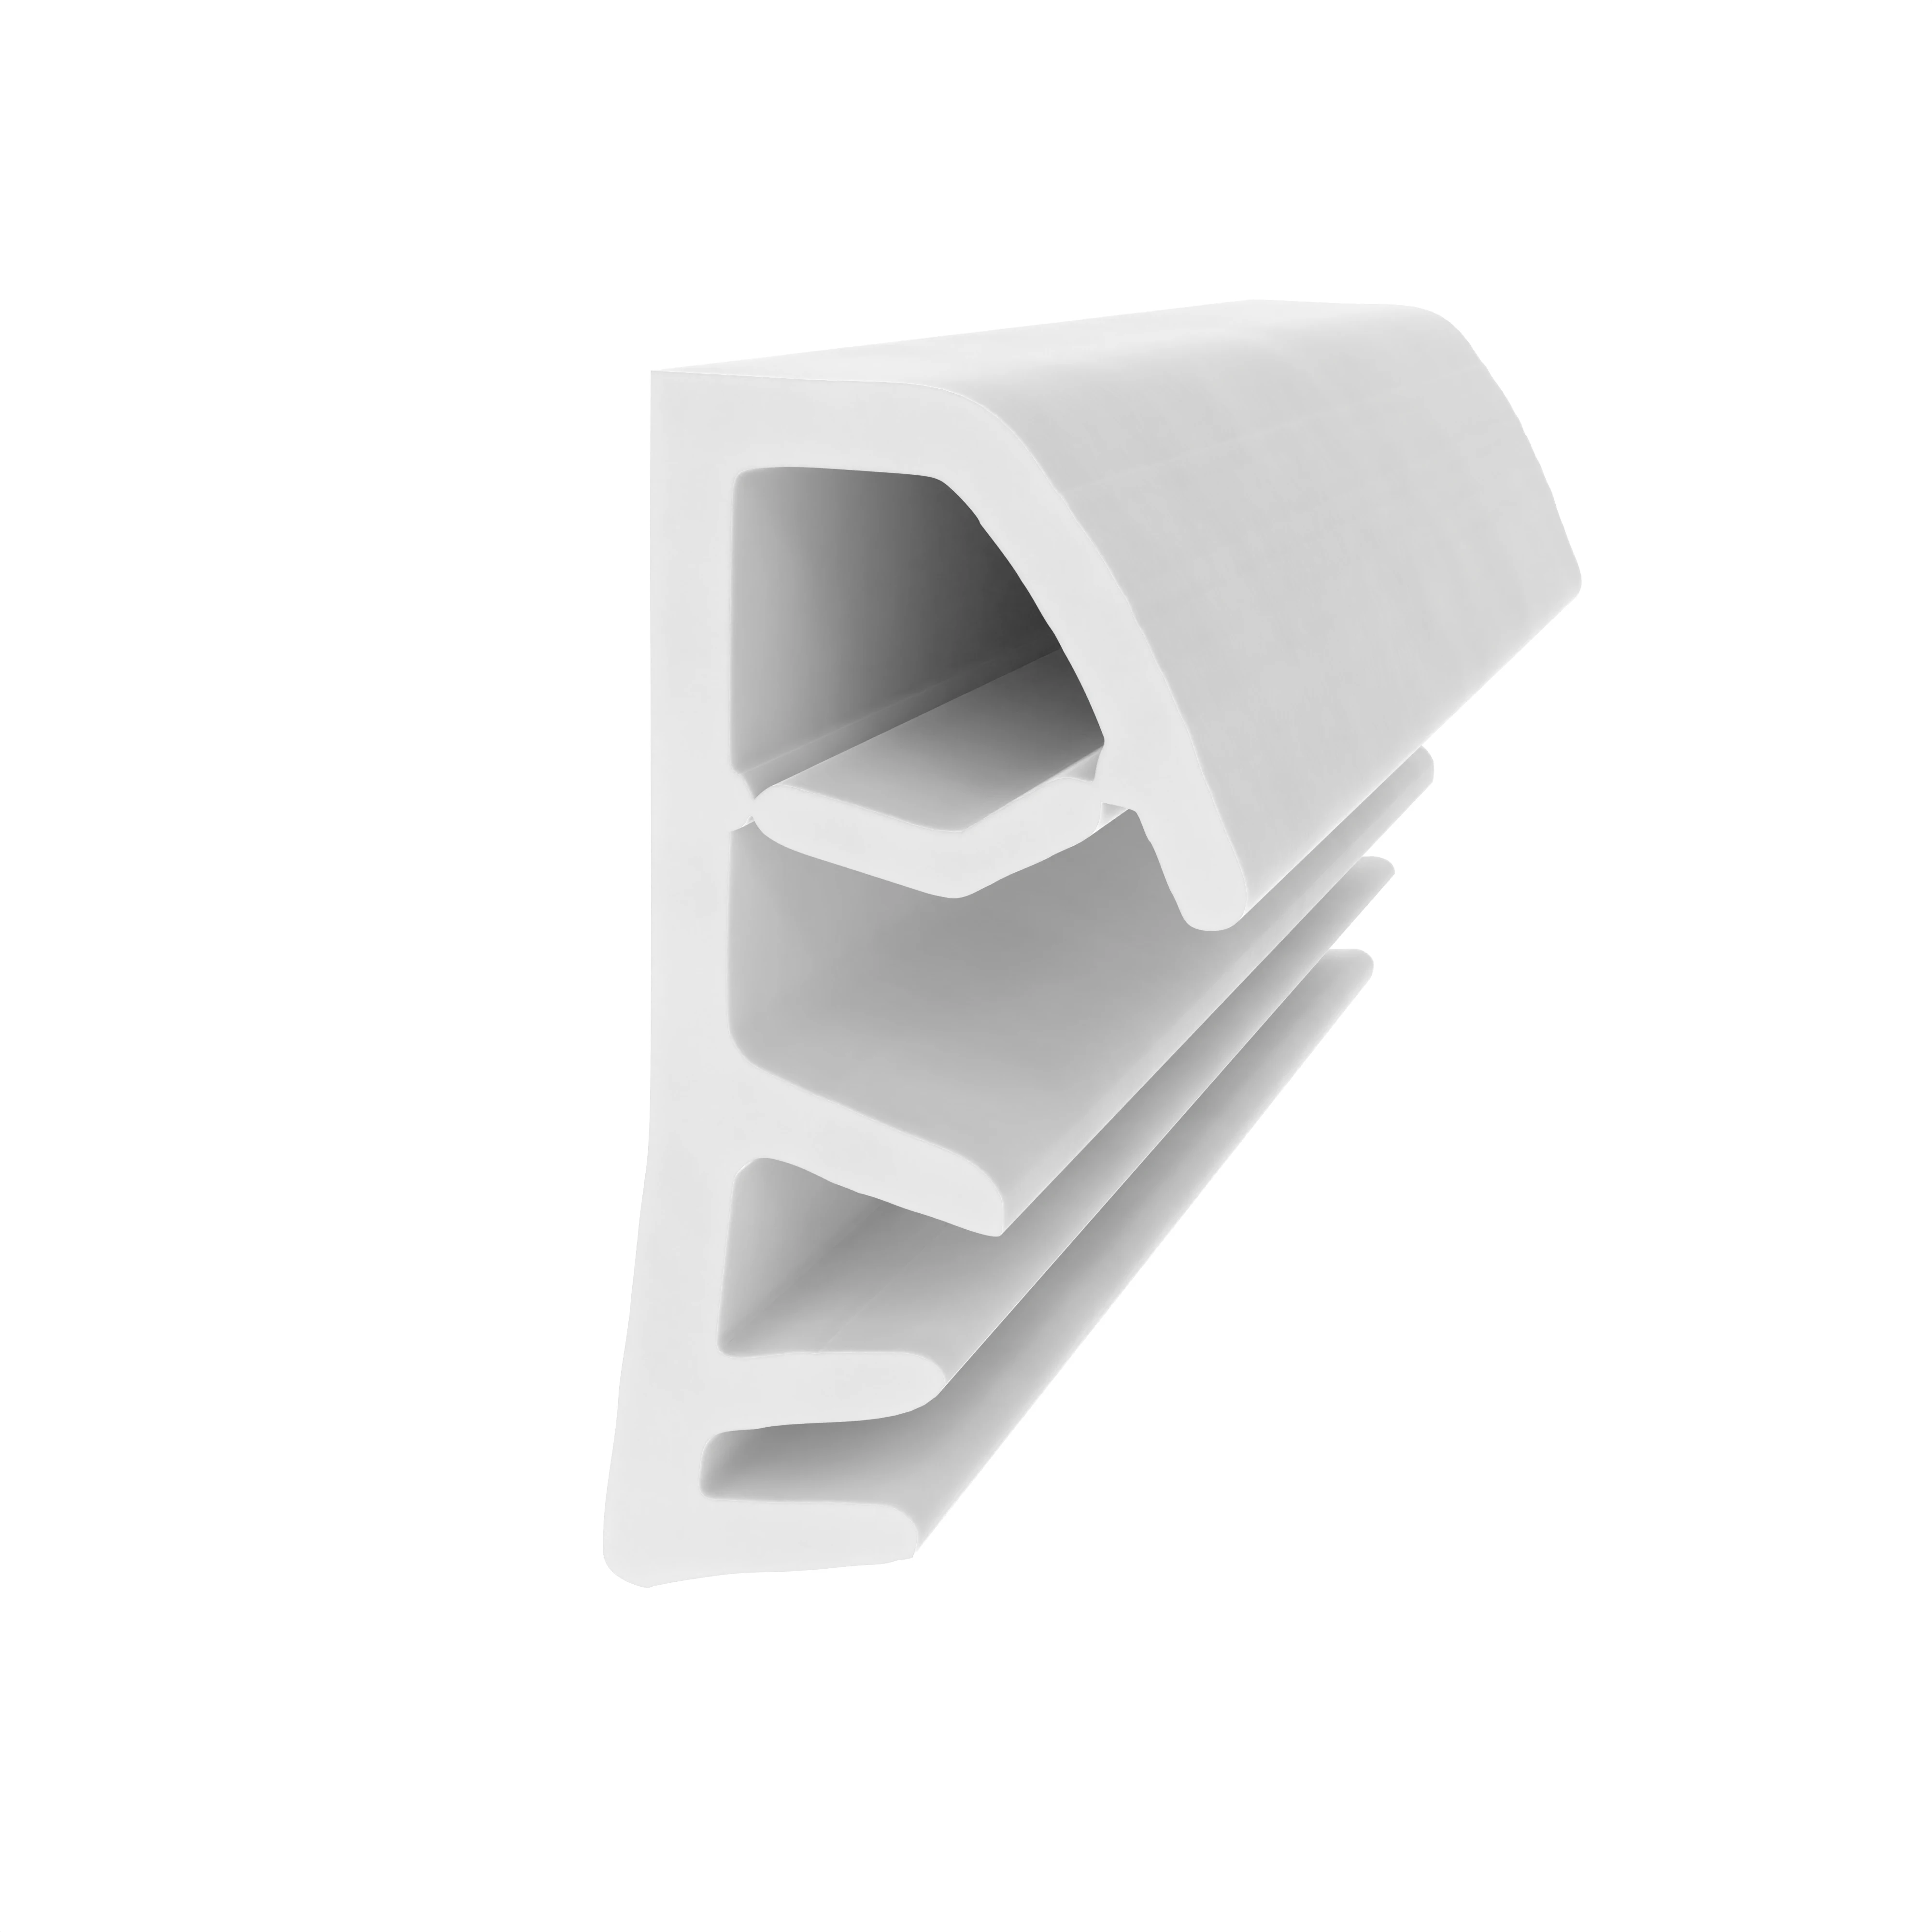 Flügelfalzdichtung für Holzflügel und -zargen | 10 mm Falzhöhe | Farbe: weiß